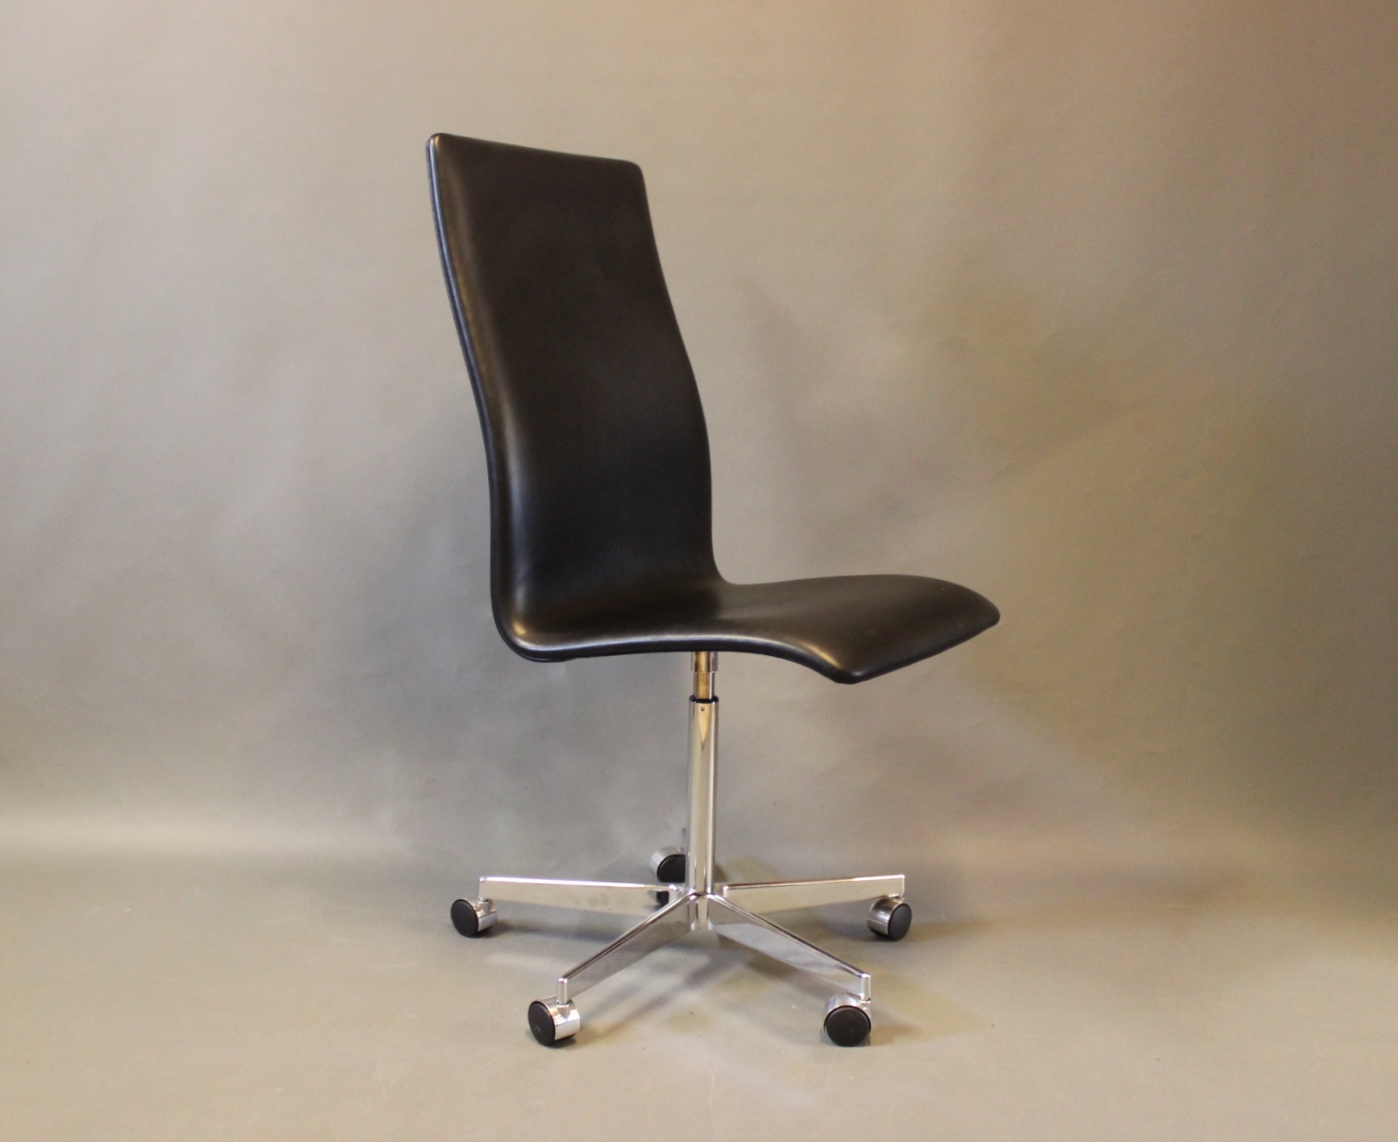 månedlige gå pie Oxford Classic kontorstol, model 3193C, i sort elegance læder af Arne  Jacobsen o - Osted Antik & Design